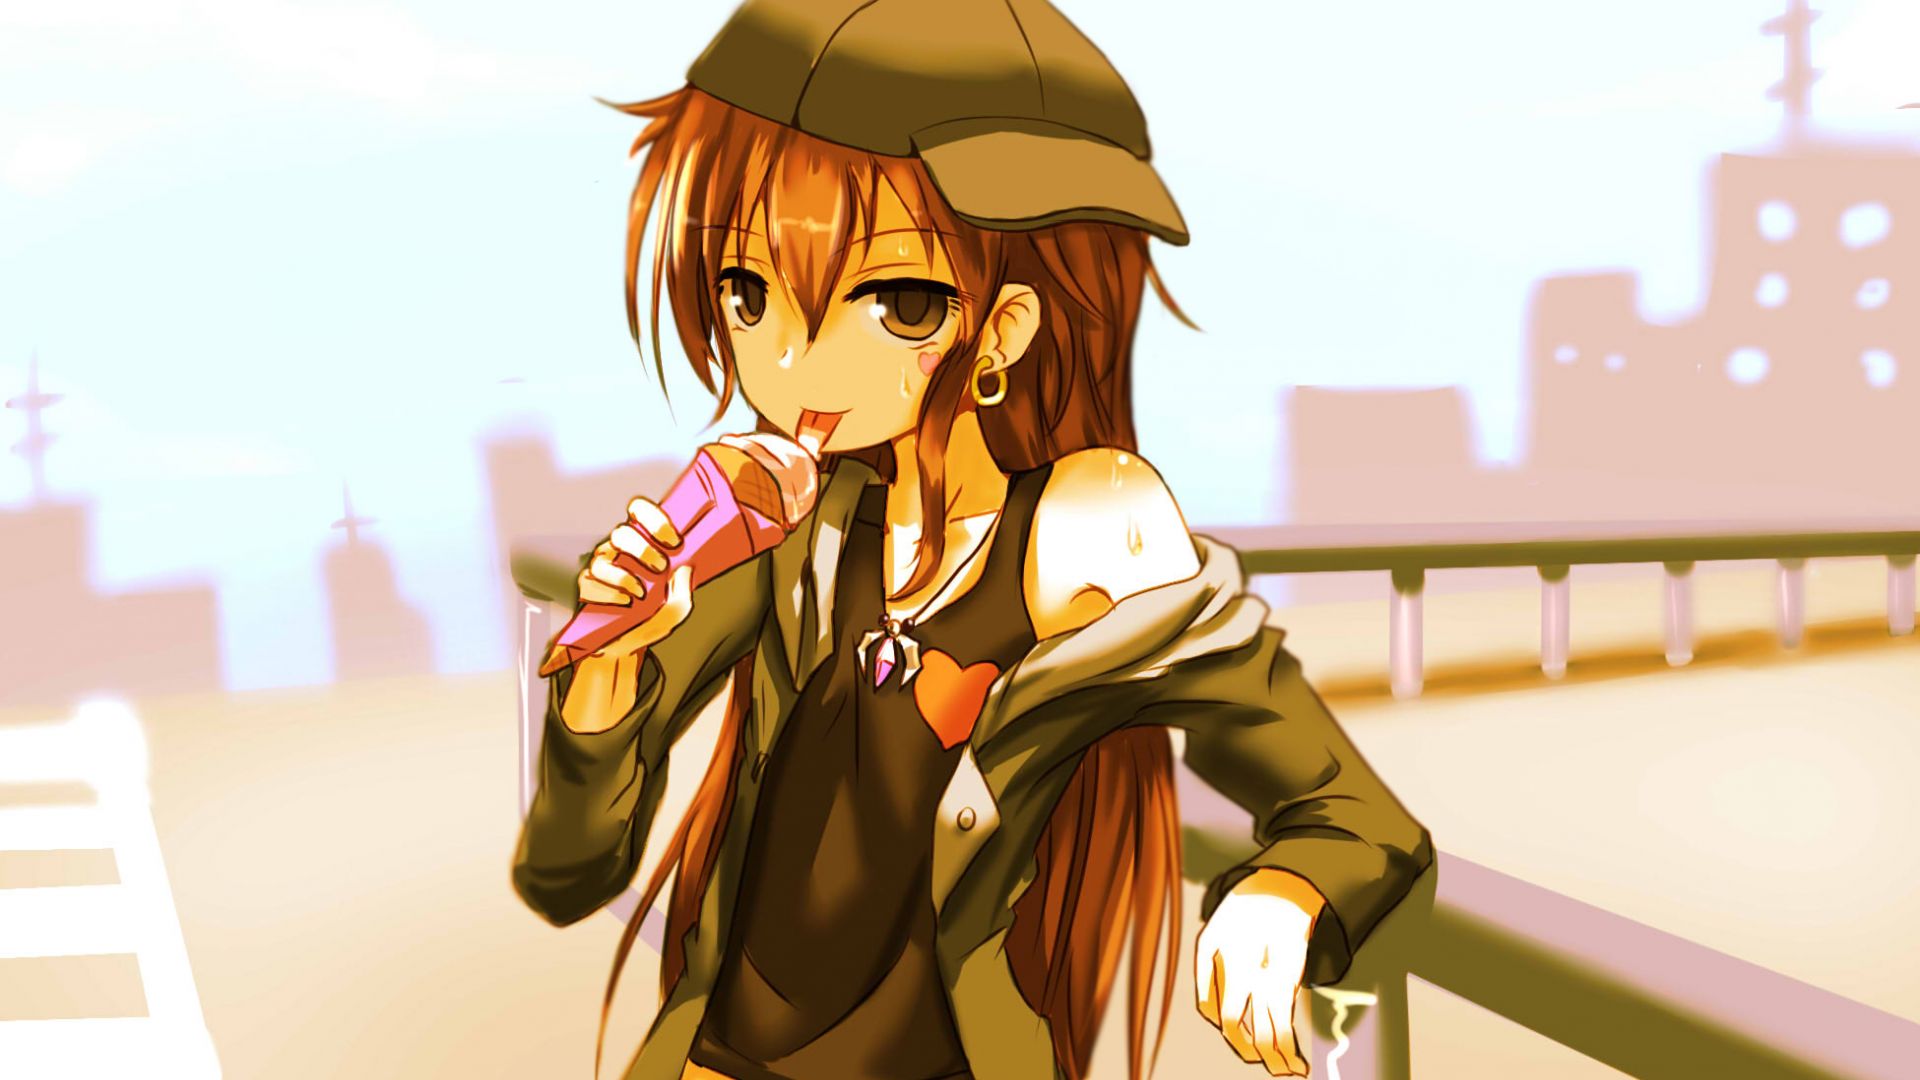 Wallpaper Pixiv Fantasia T, anime girl, eating ice cream